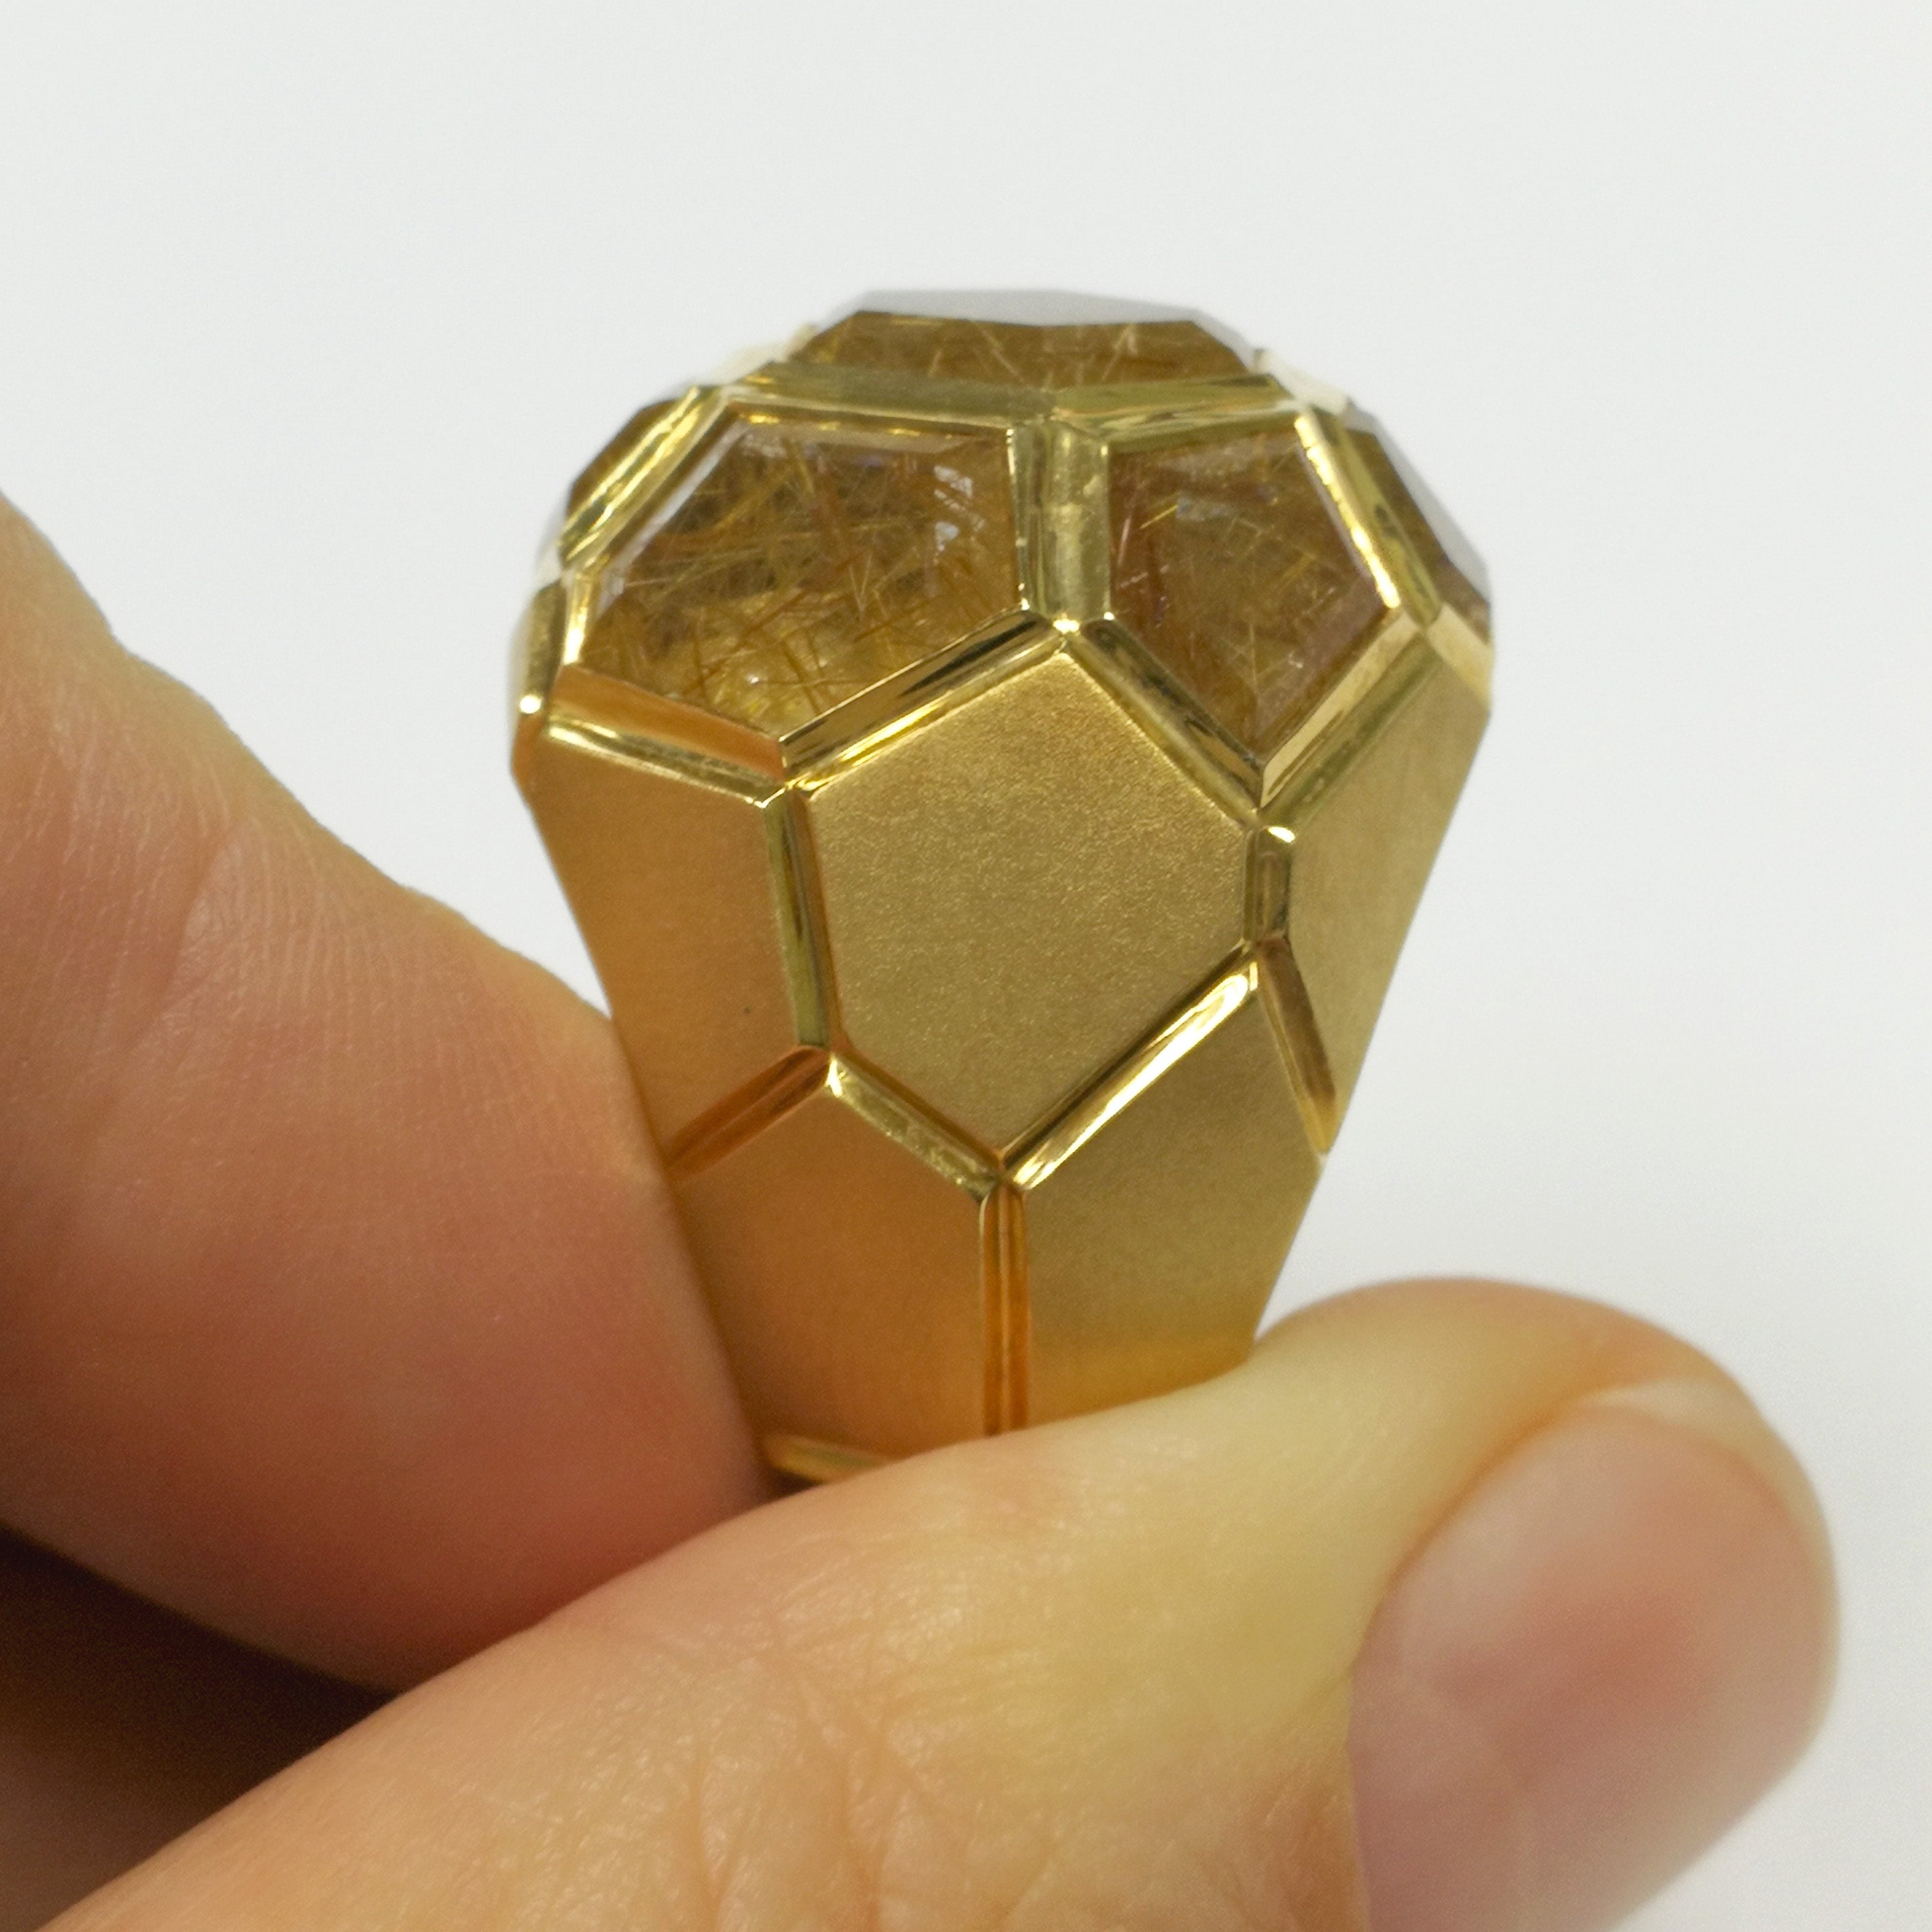 R 0190-61, 18K Yellow Gold, Rutilated Quartz Ring